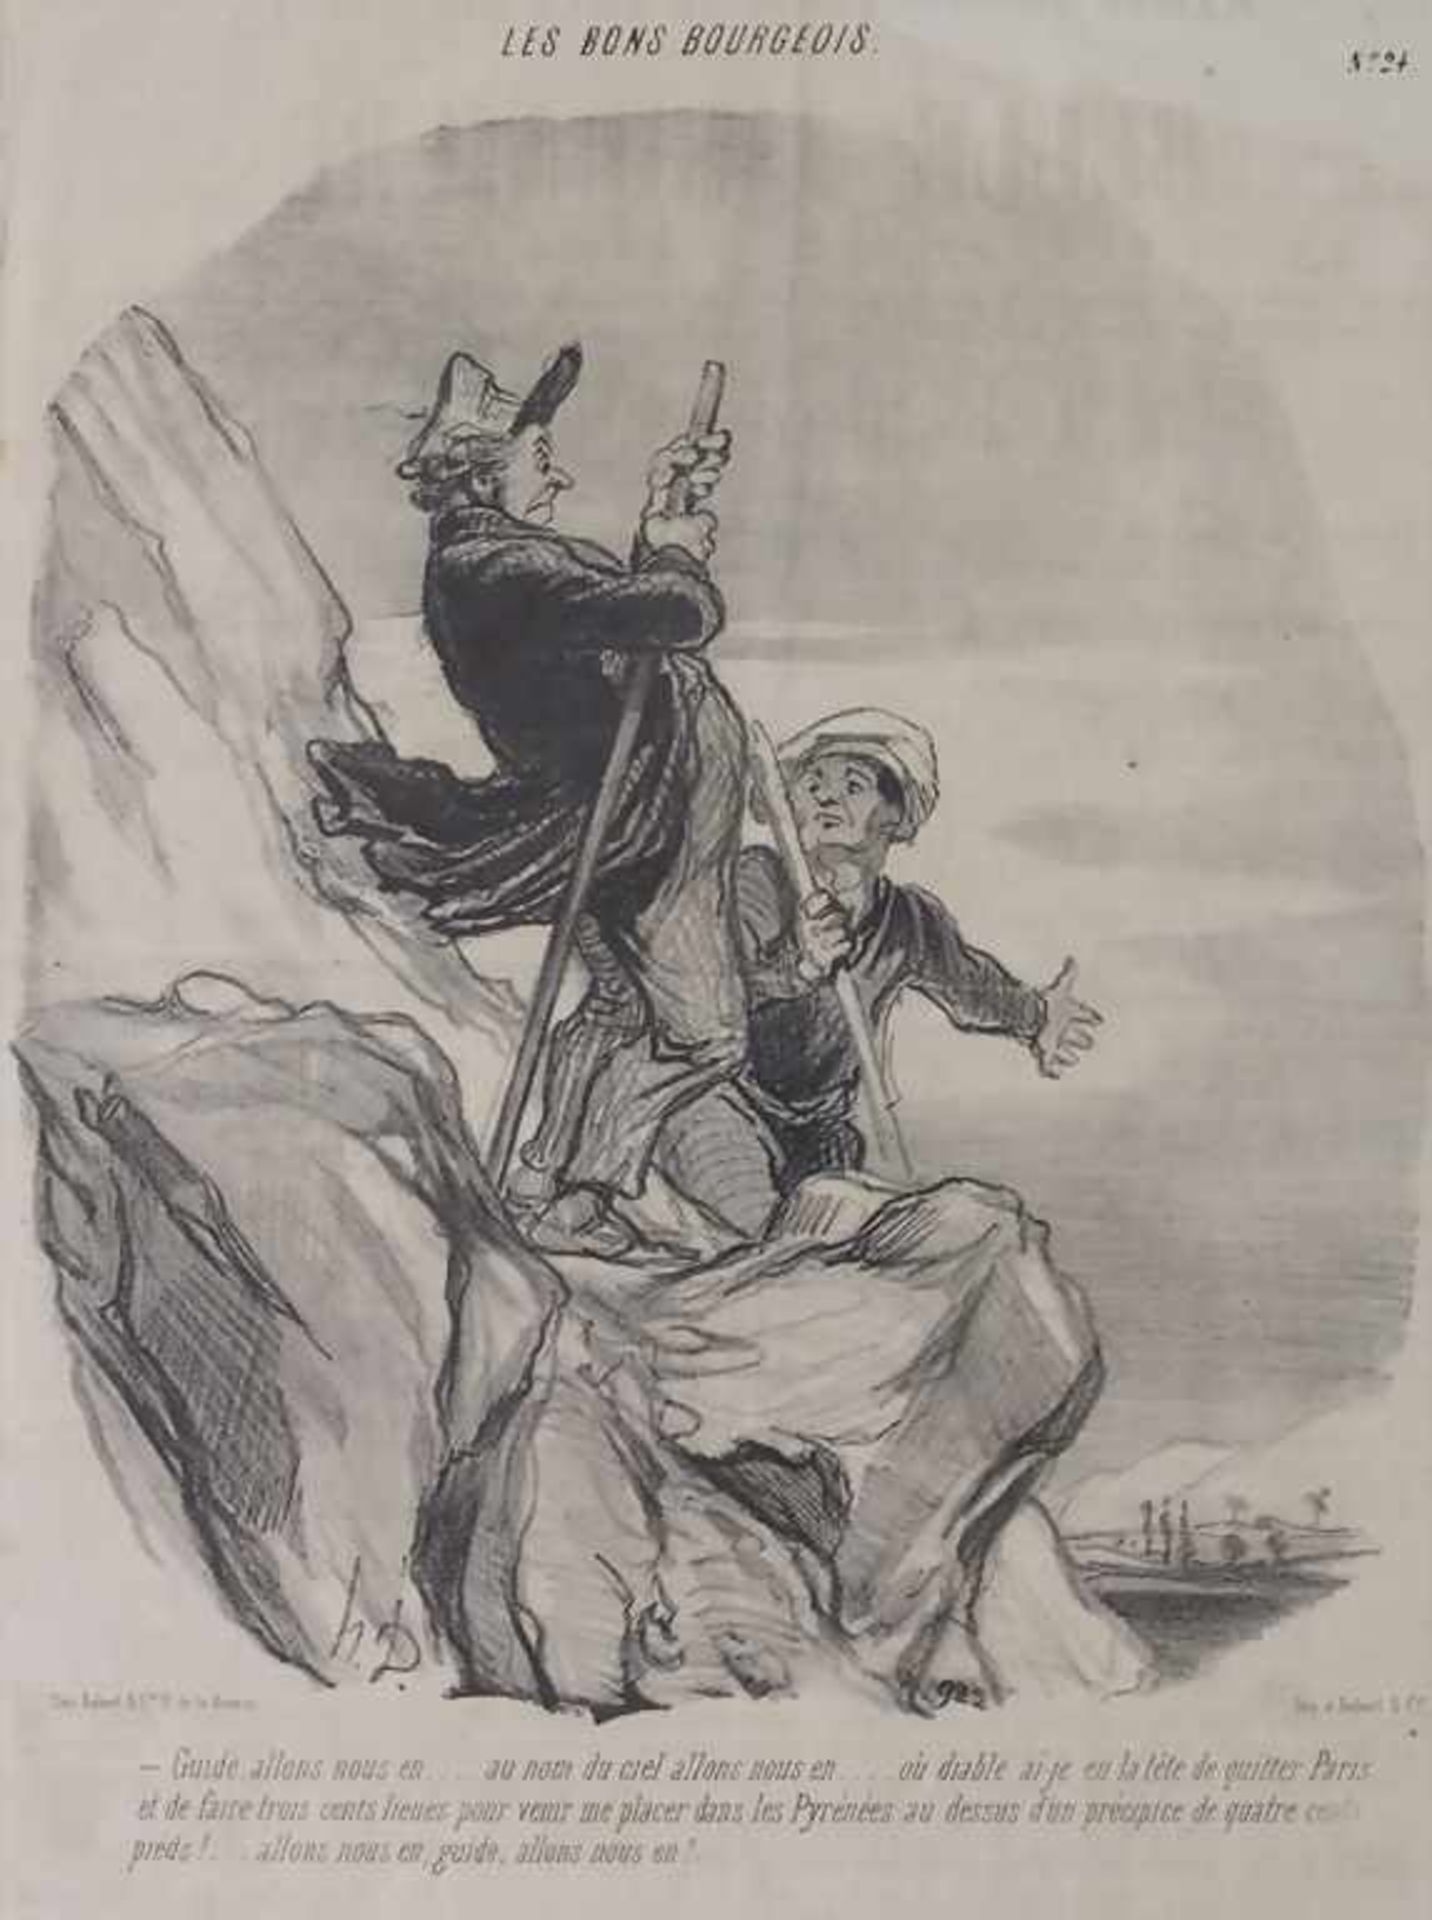 Honoré Daumier (1808-1879), 'Les Bons Bourgeois'<